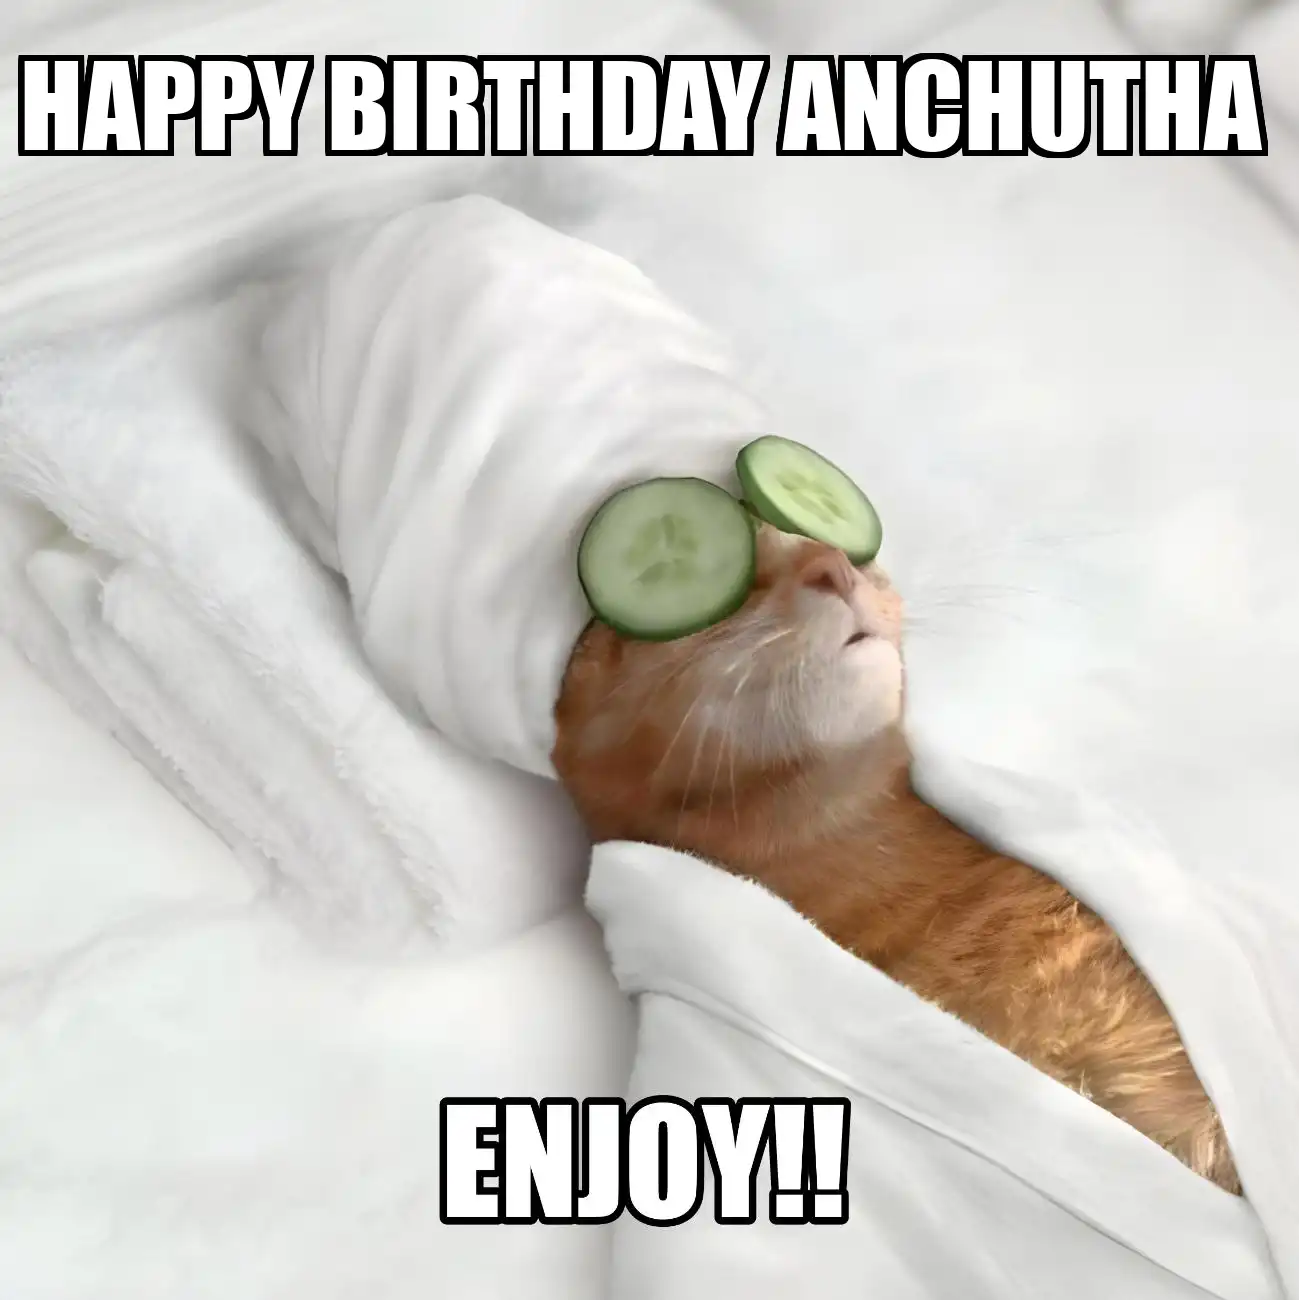 Happy Birthday Anchutha Enjoy Cat Meme